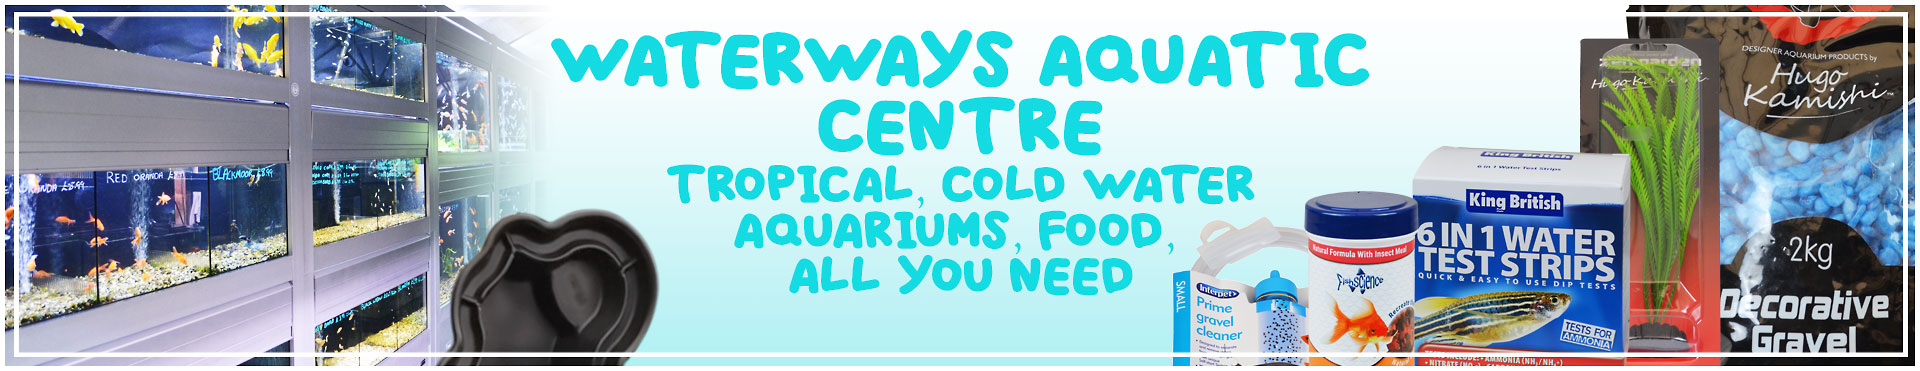 Waterways Aquatic Centre